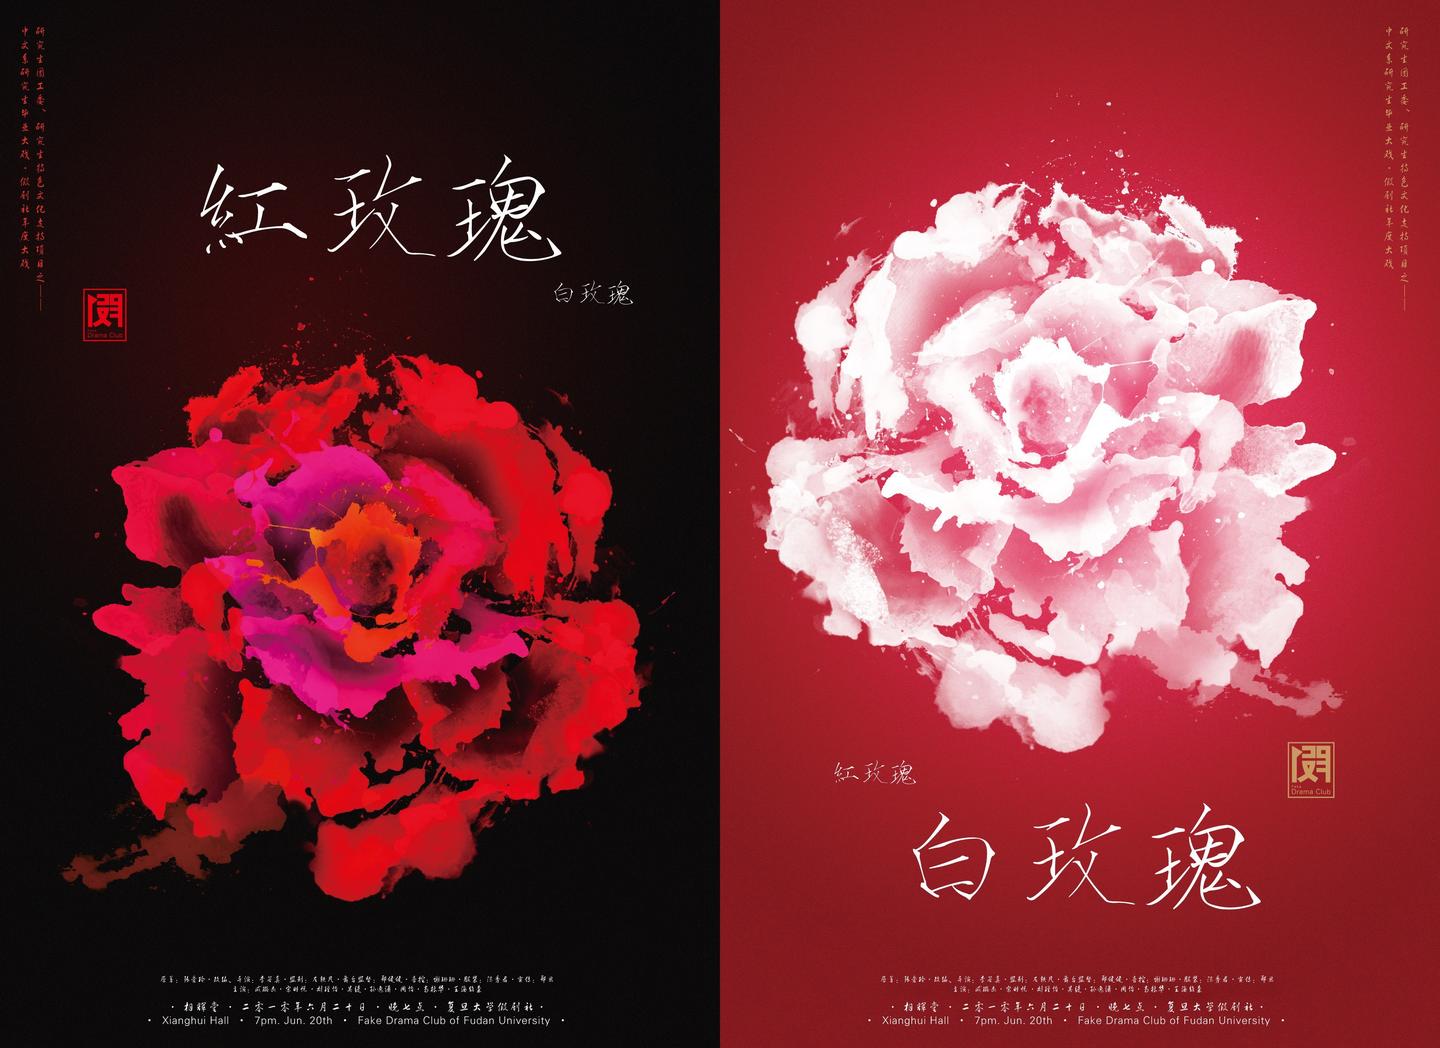 白玫瑰与红玫瑰 - 溱桑/玫月 - 单曲 - 网易云音乐